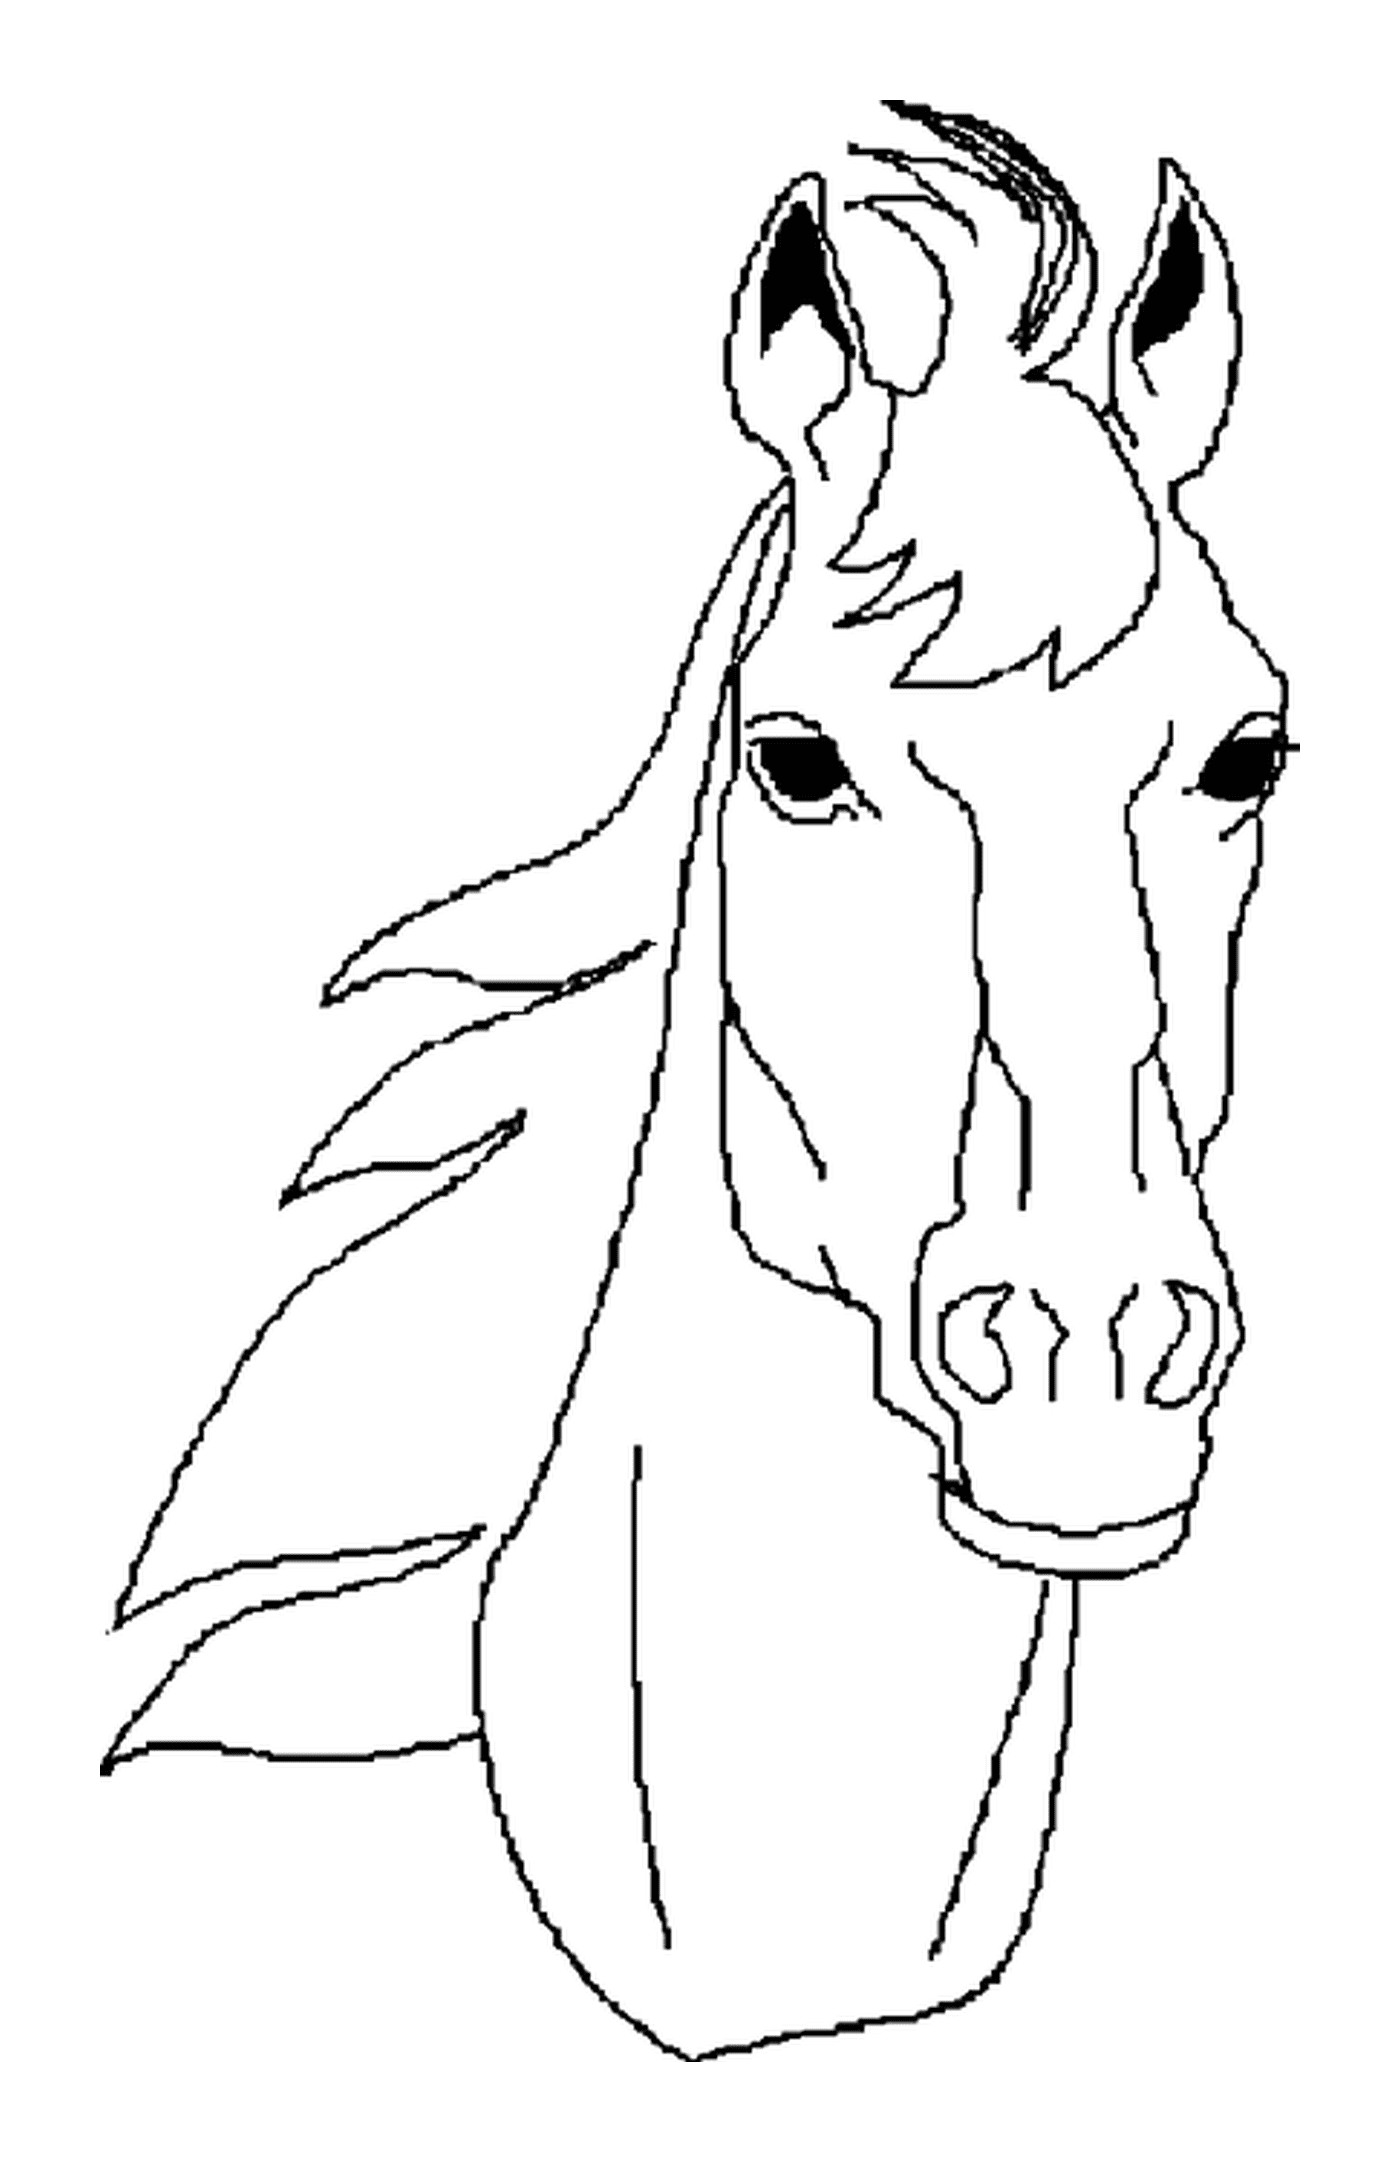  Retrato facial de una cabeza de caballo 